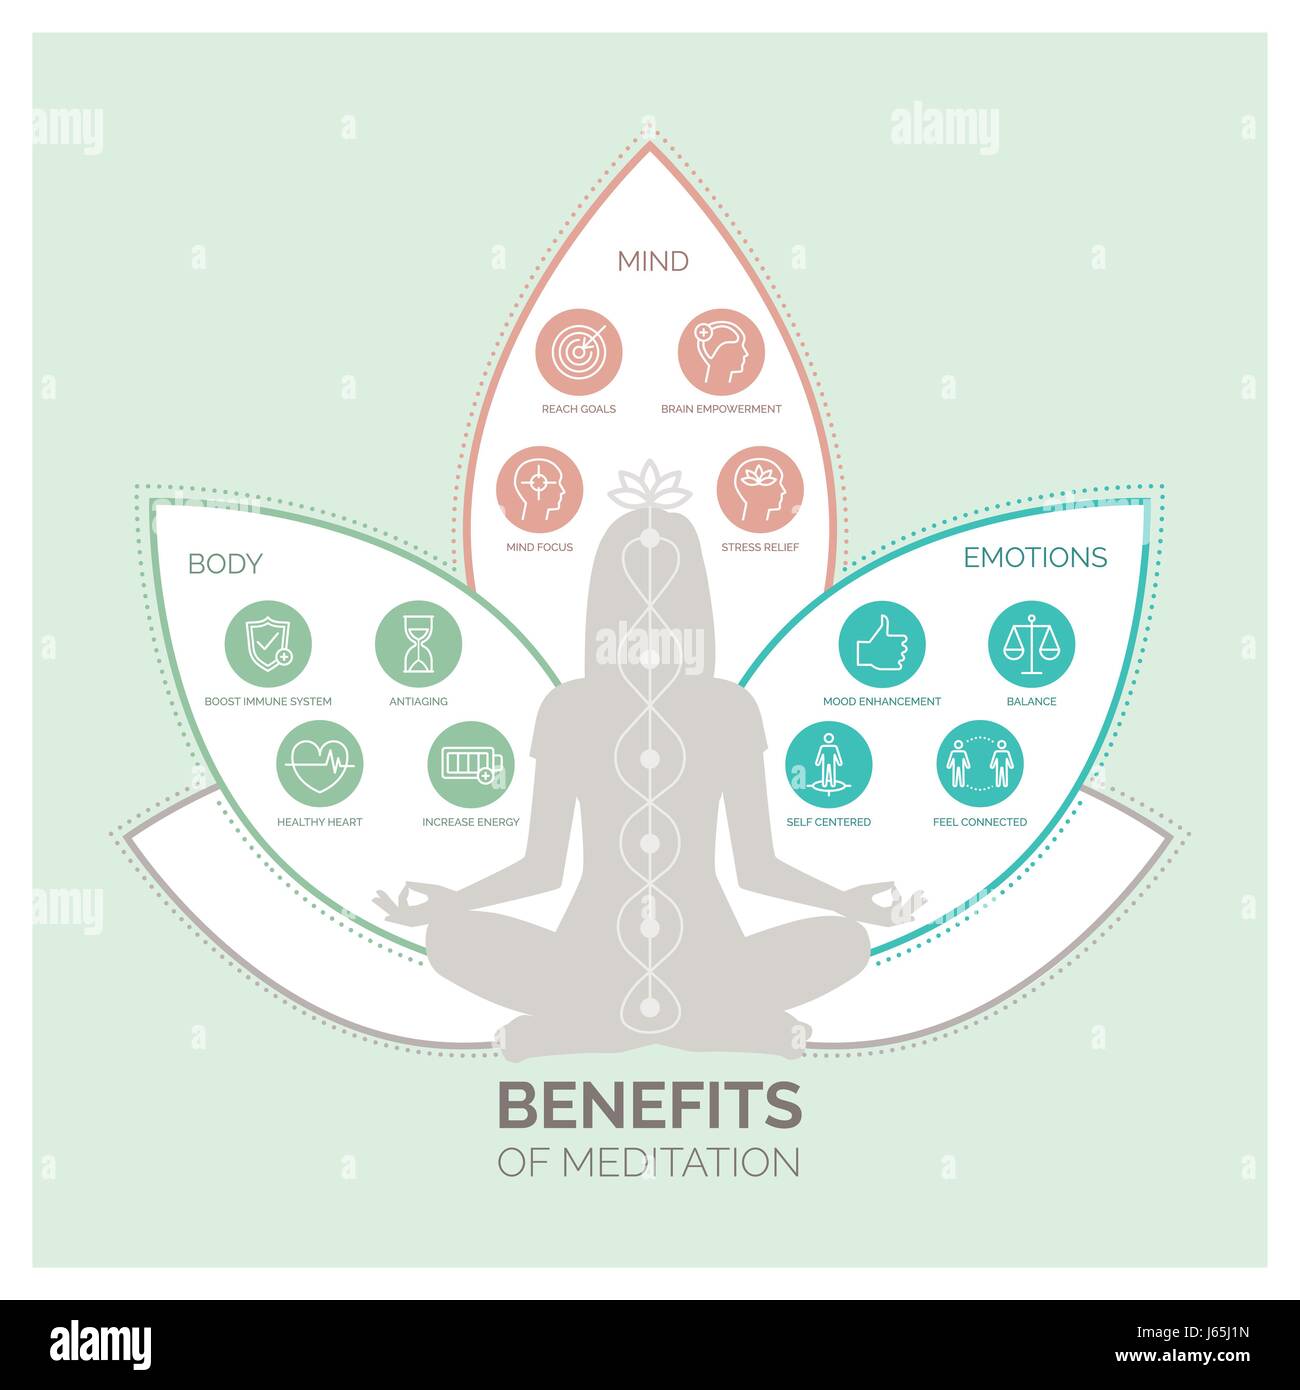 Meditation-Gesundheit für Körper, Geist und Emotionen, Vektor-Infografik mit Icons set Stock Vektor